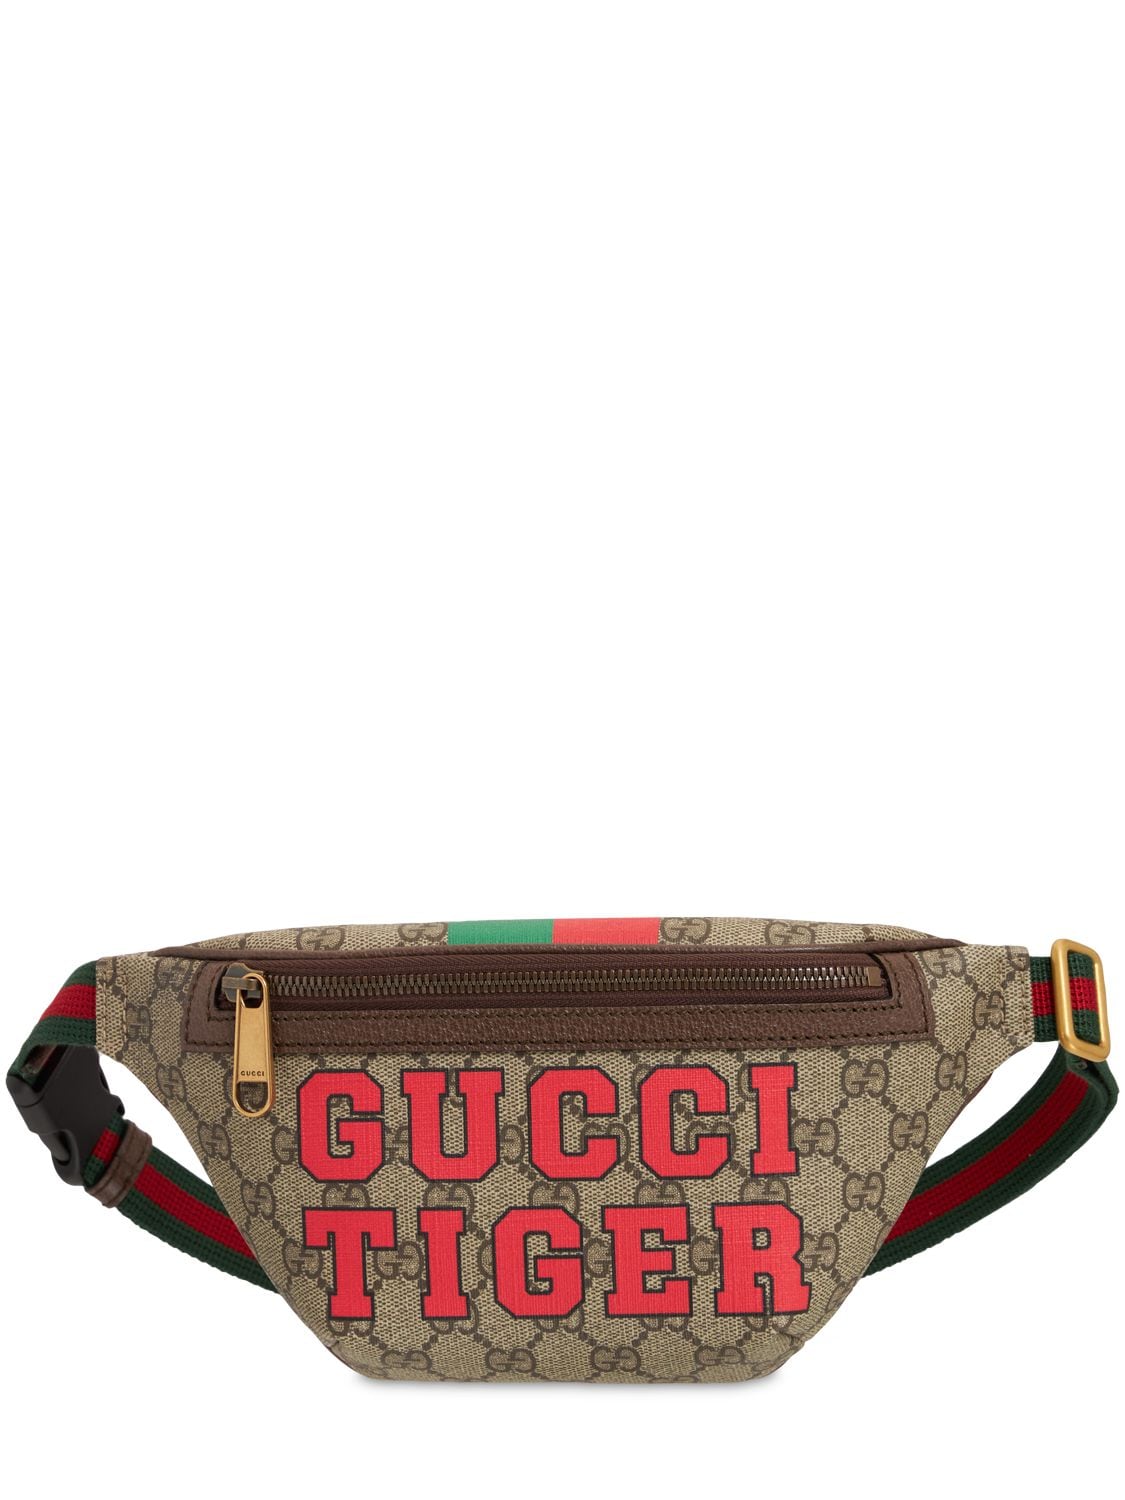 Gucci Tiger Belt Bag for Men